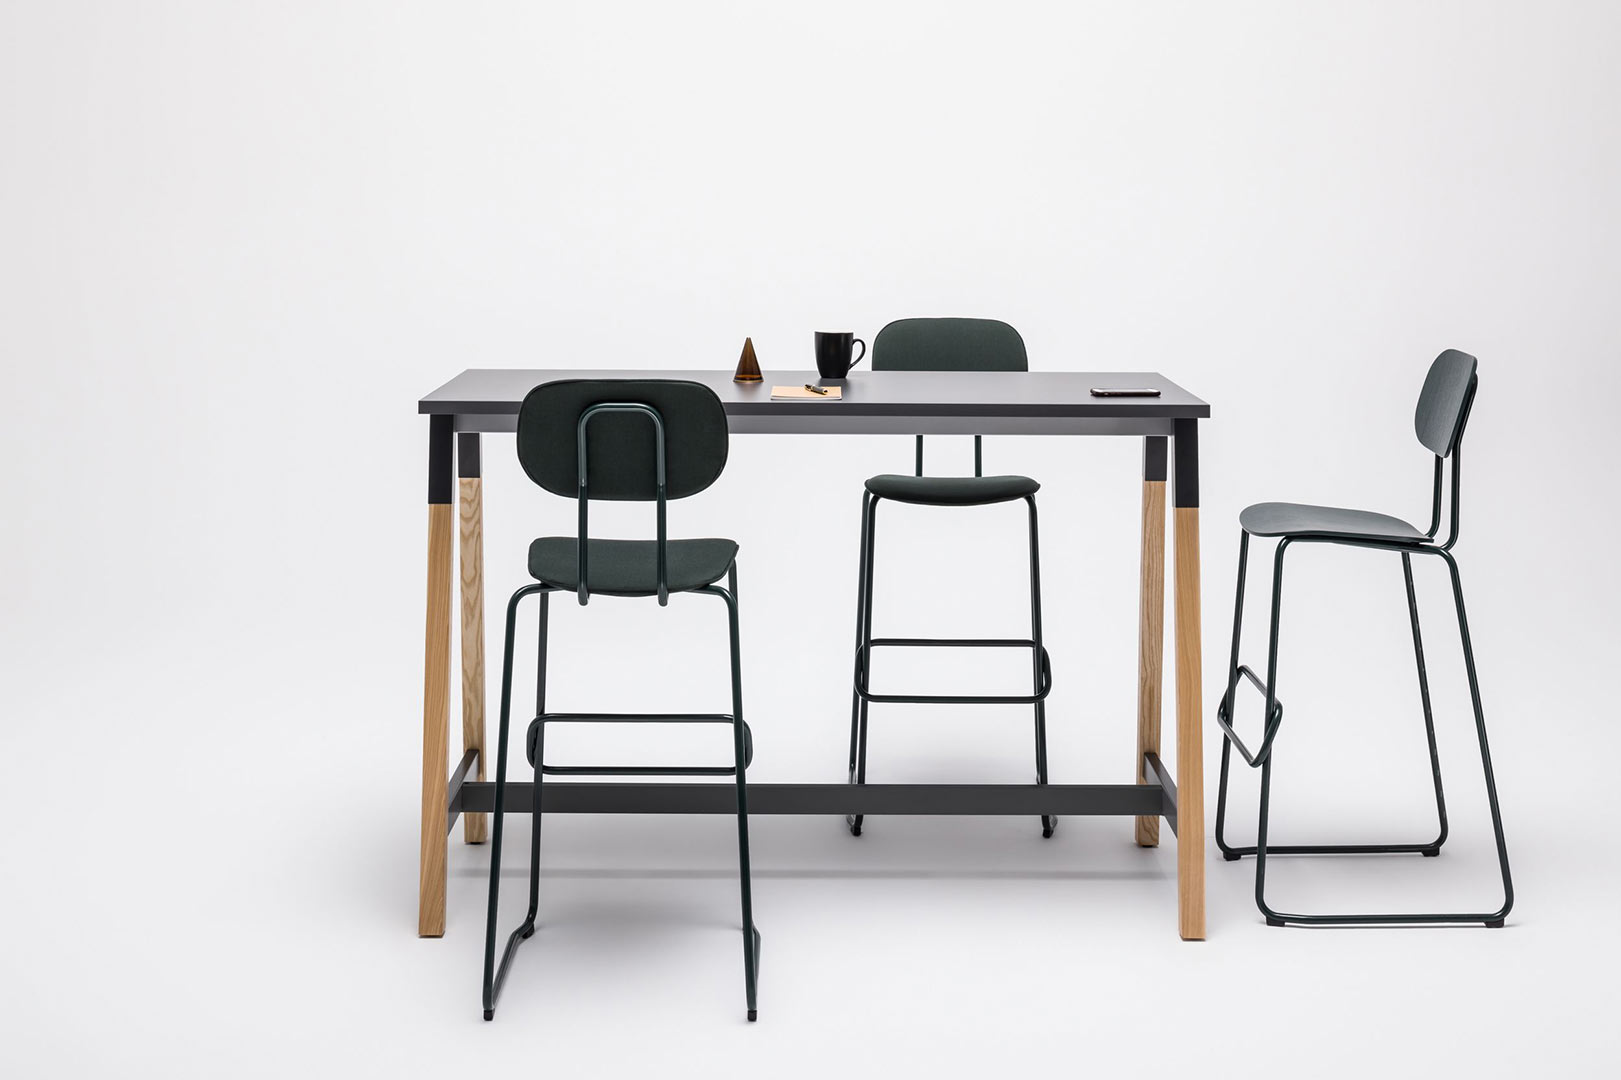 Tables de réunion - Design Scandinave